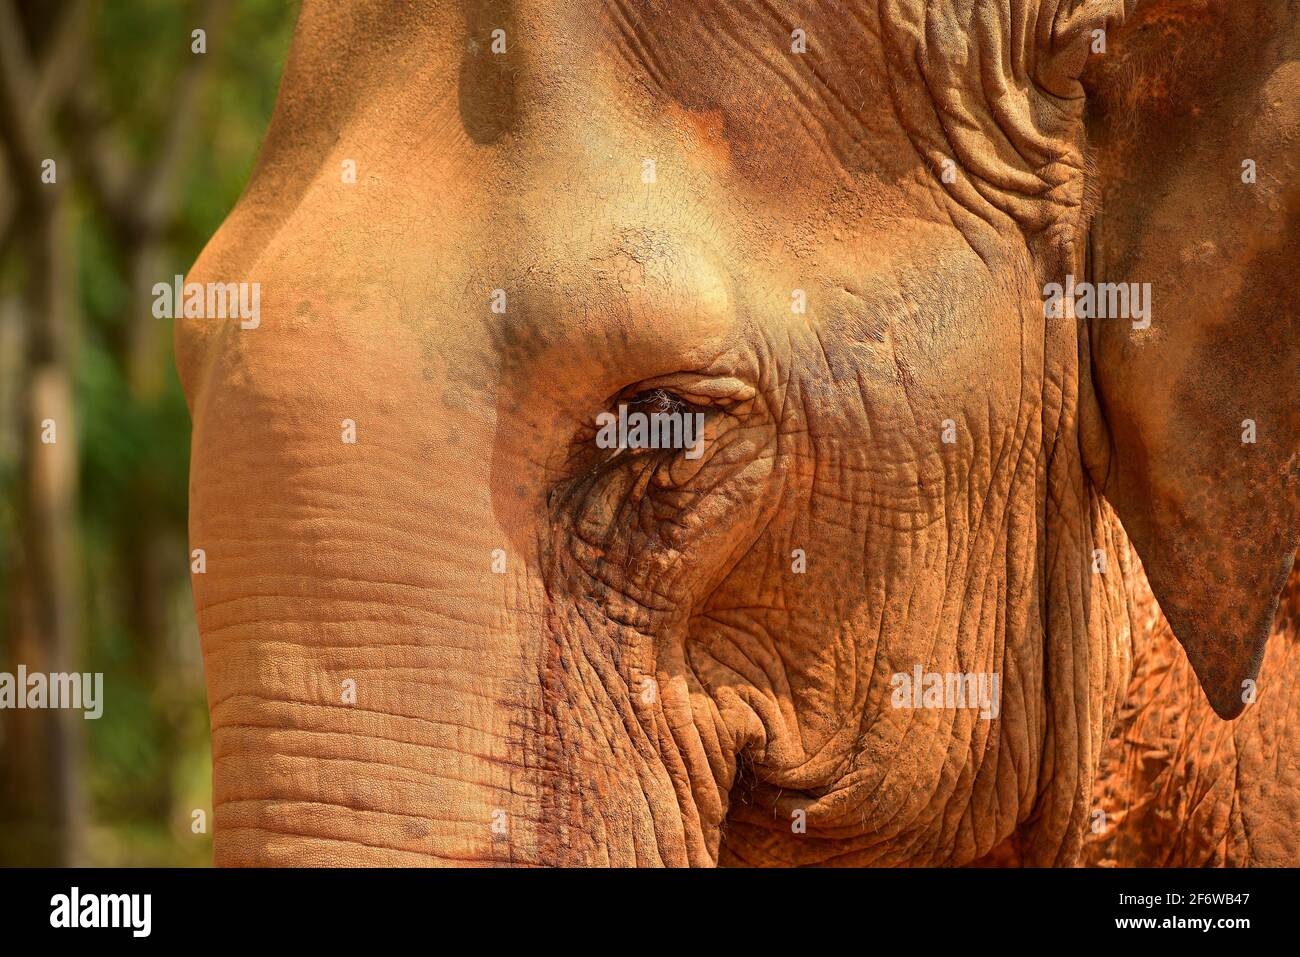 Elefante asiático o asiático (Elephas maximus), detalle de cabeza. Chiang Mai, Tailandia. Foto de stock